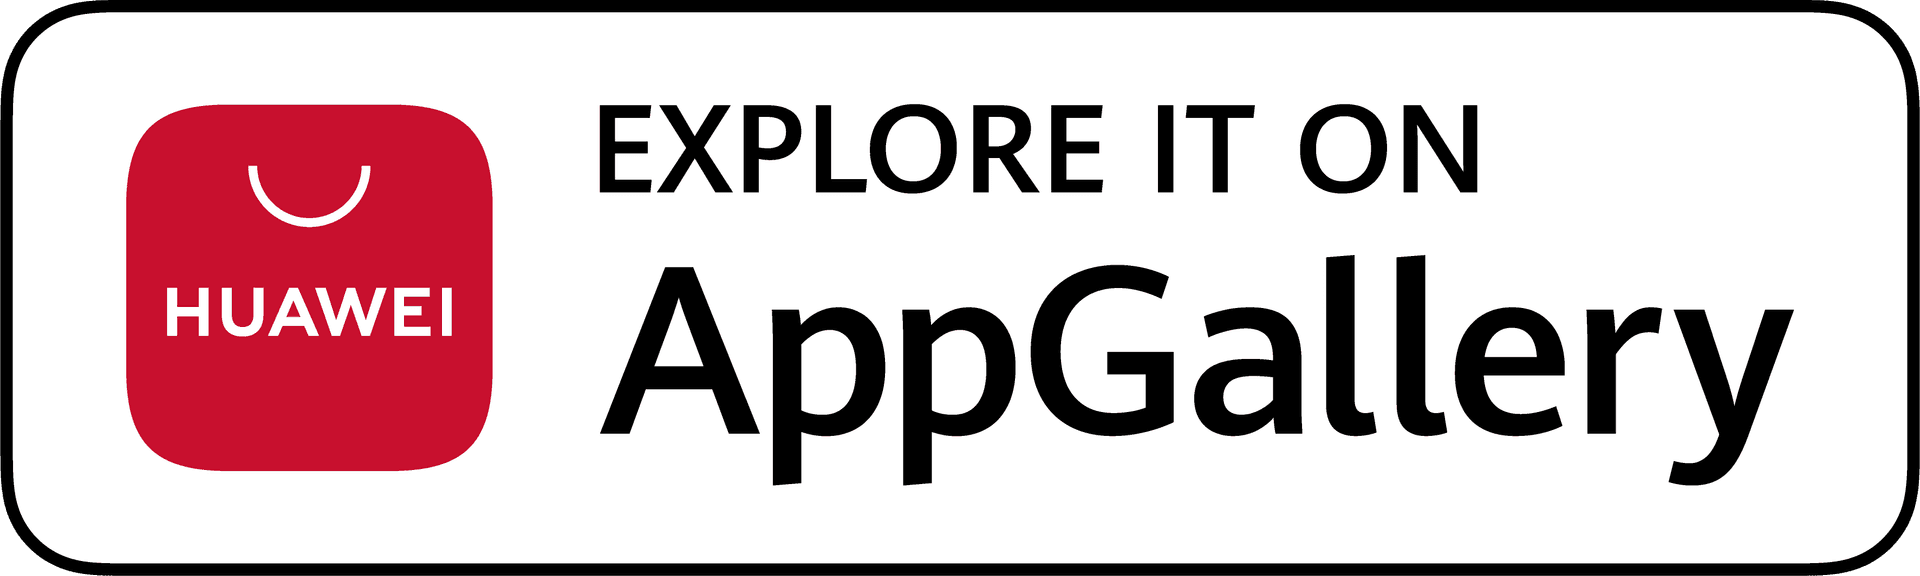 Explorar en AppGallery